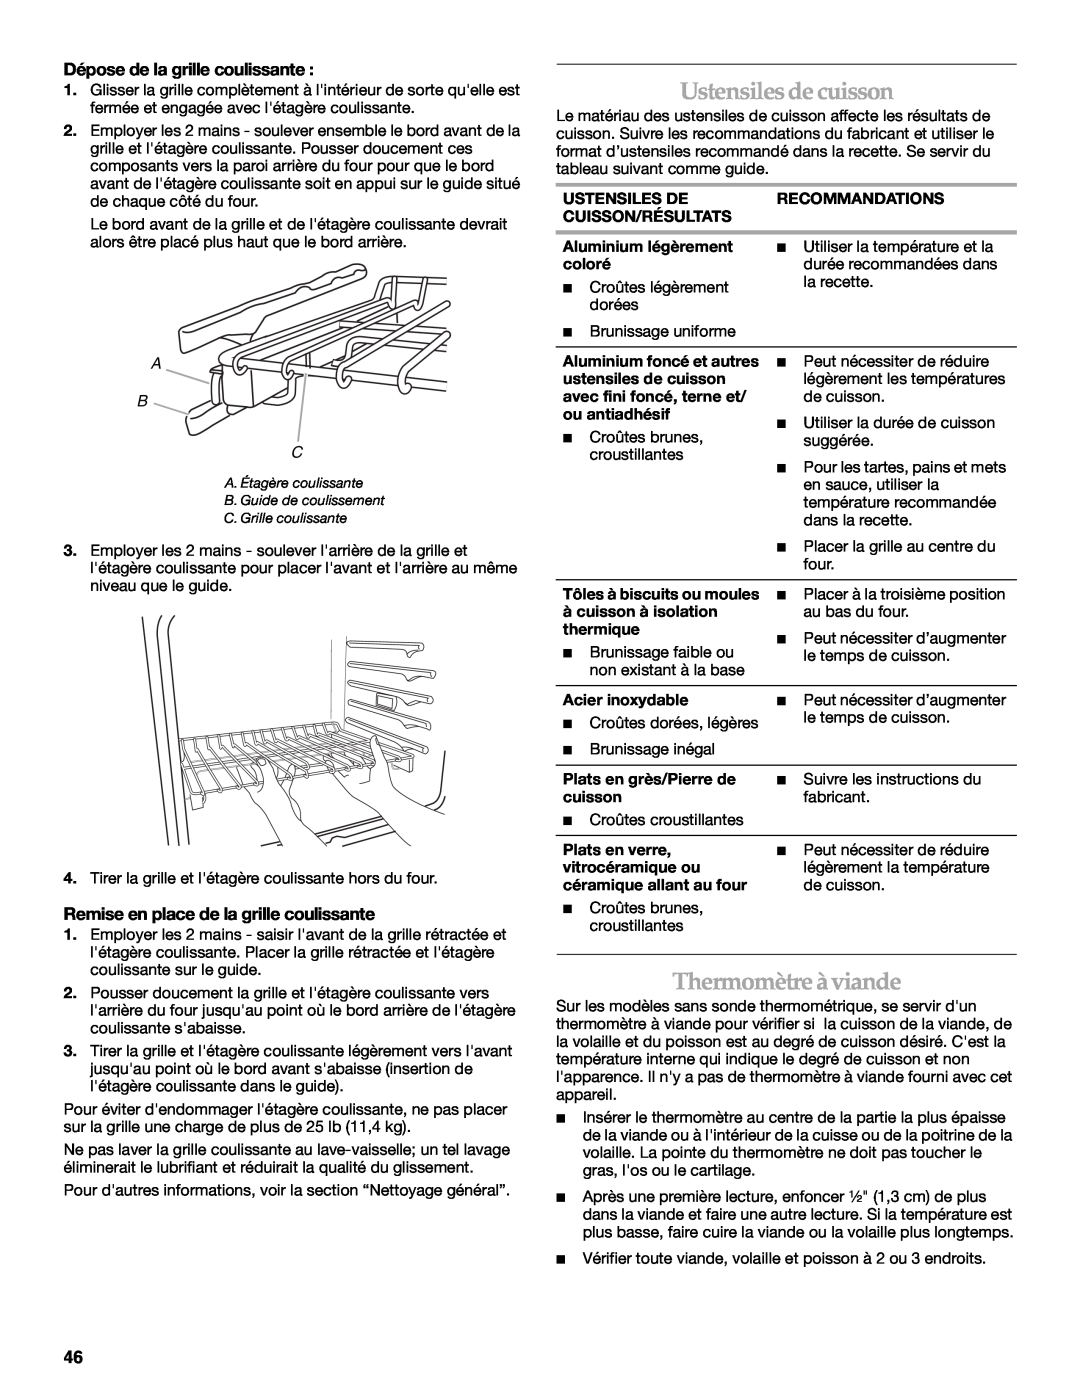 KitchenAid KEHU309 manual Ustensilesdecuisson, Thermomètreàviande, Dépose de la grille coulissante, A B C 